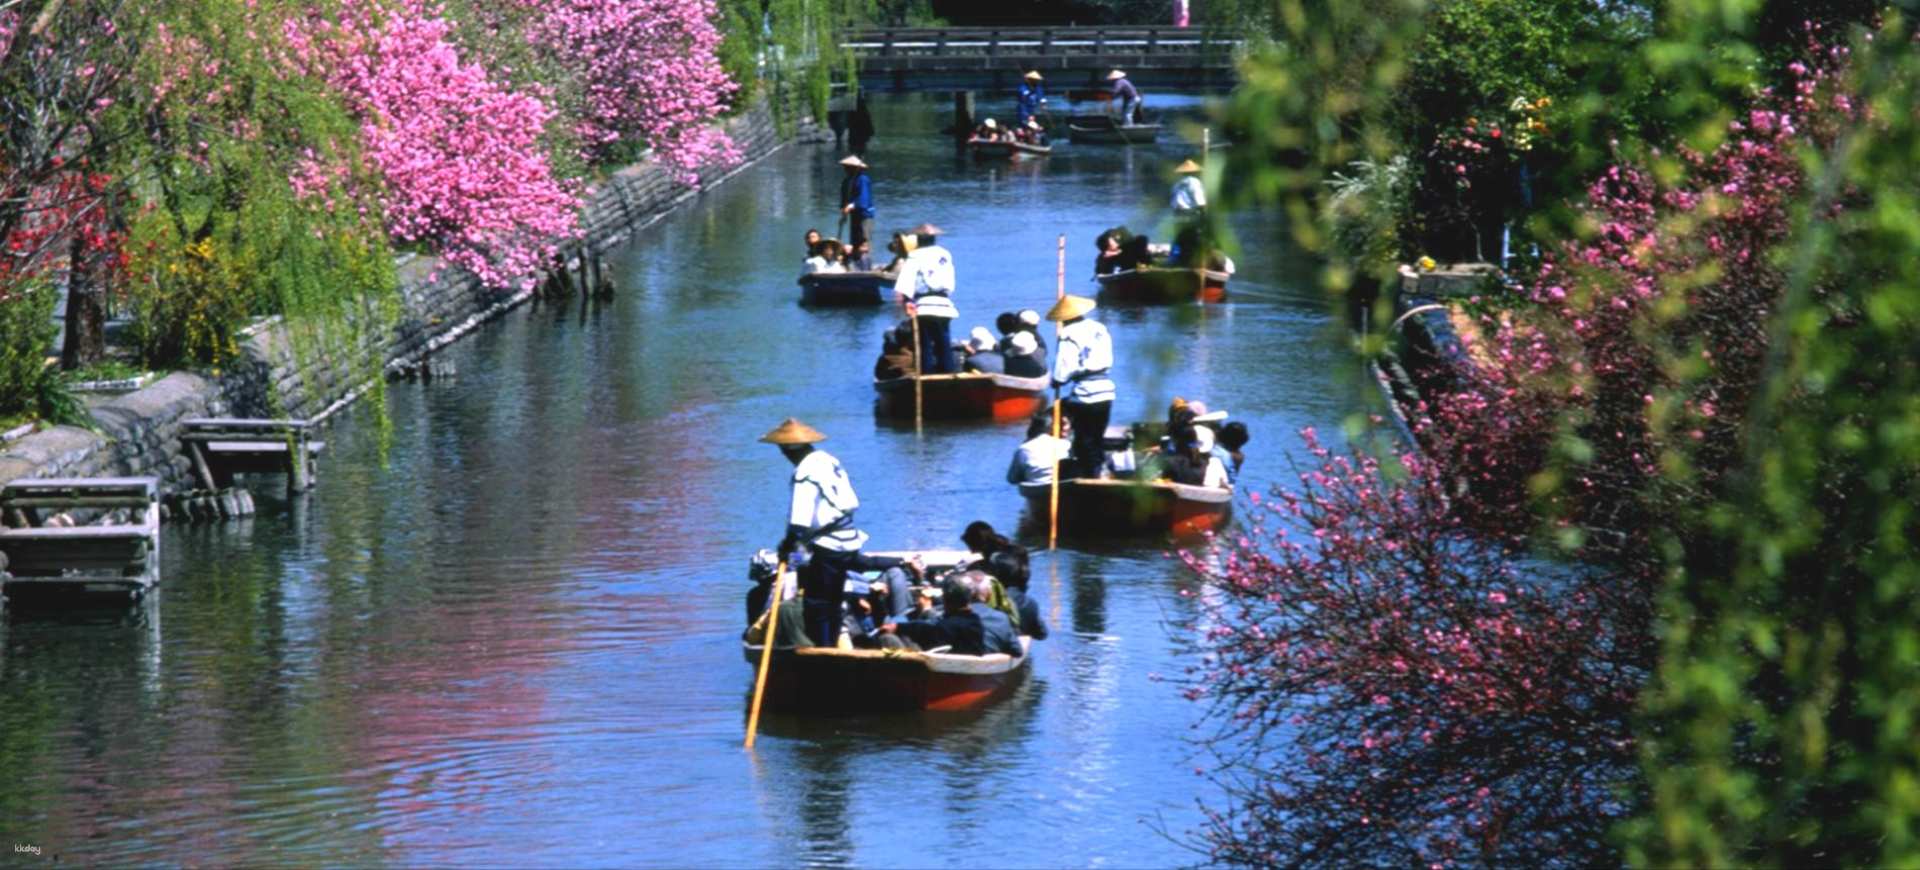 日本-九州柳川觀光遊船票| 下町風情渡船之旅